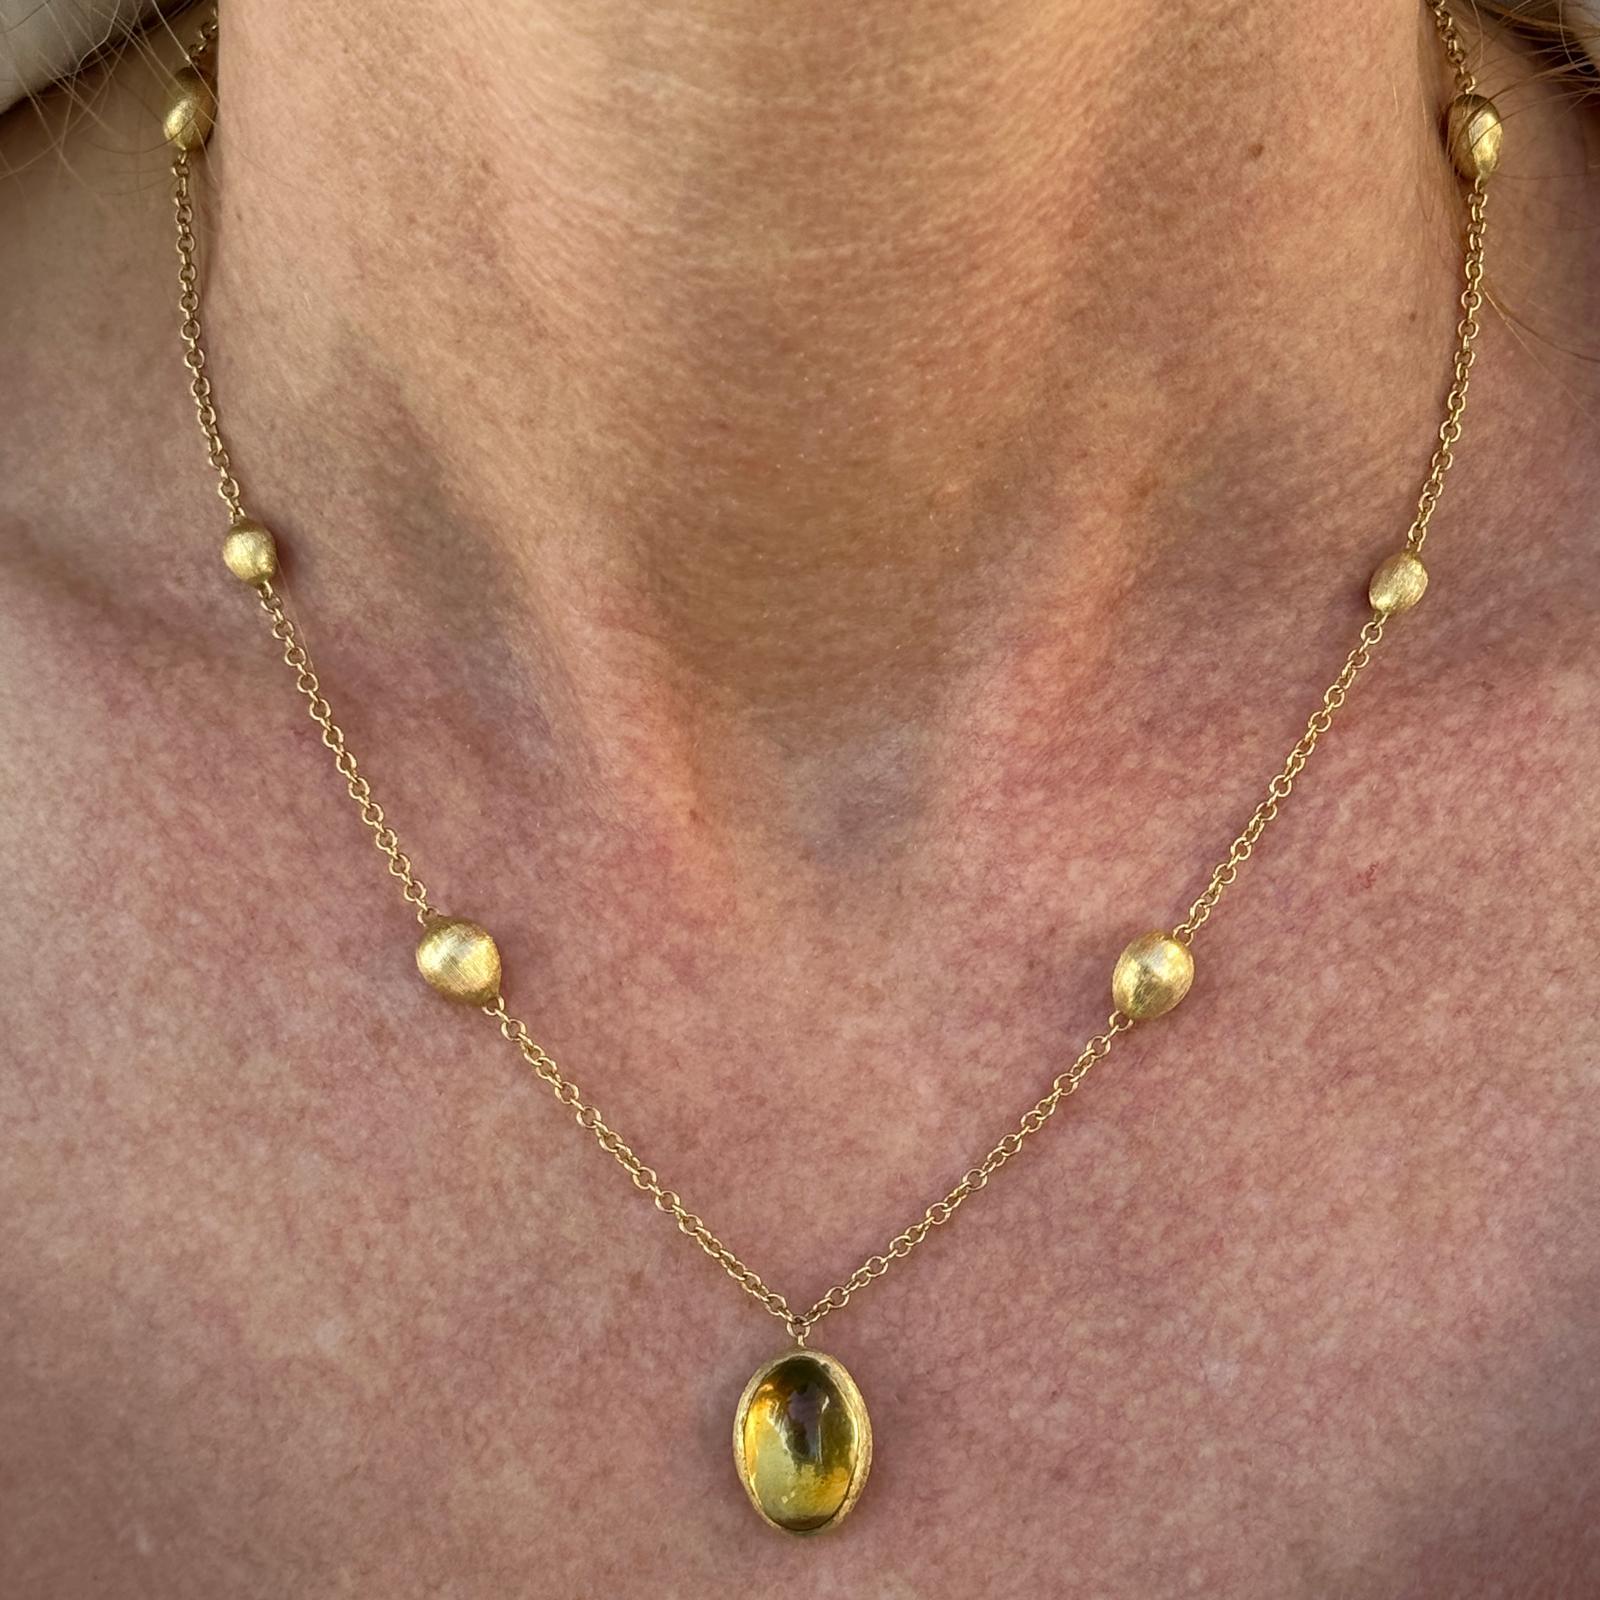 Collier à pendentifs en citrine Marco Bicego Siviglia réalisé en or jaune 18 carats. Le collier comporte un pendentif en citrine cabochon mesurant 10 x 15 mm, et le collier mesure 16,25 pouces de long. Poids : 9,3 grammes.